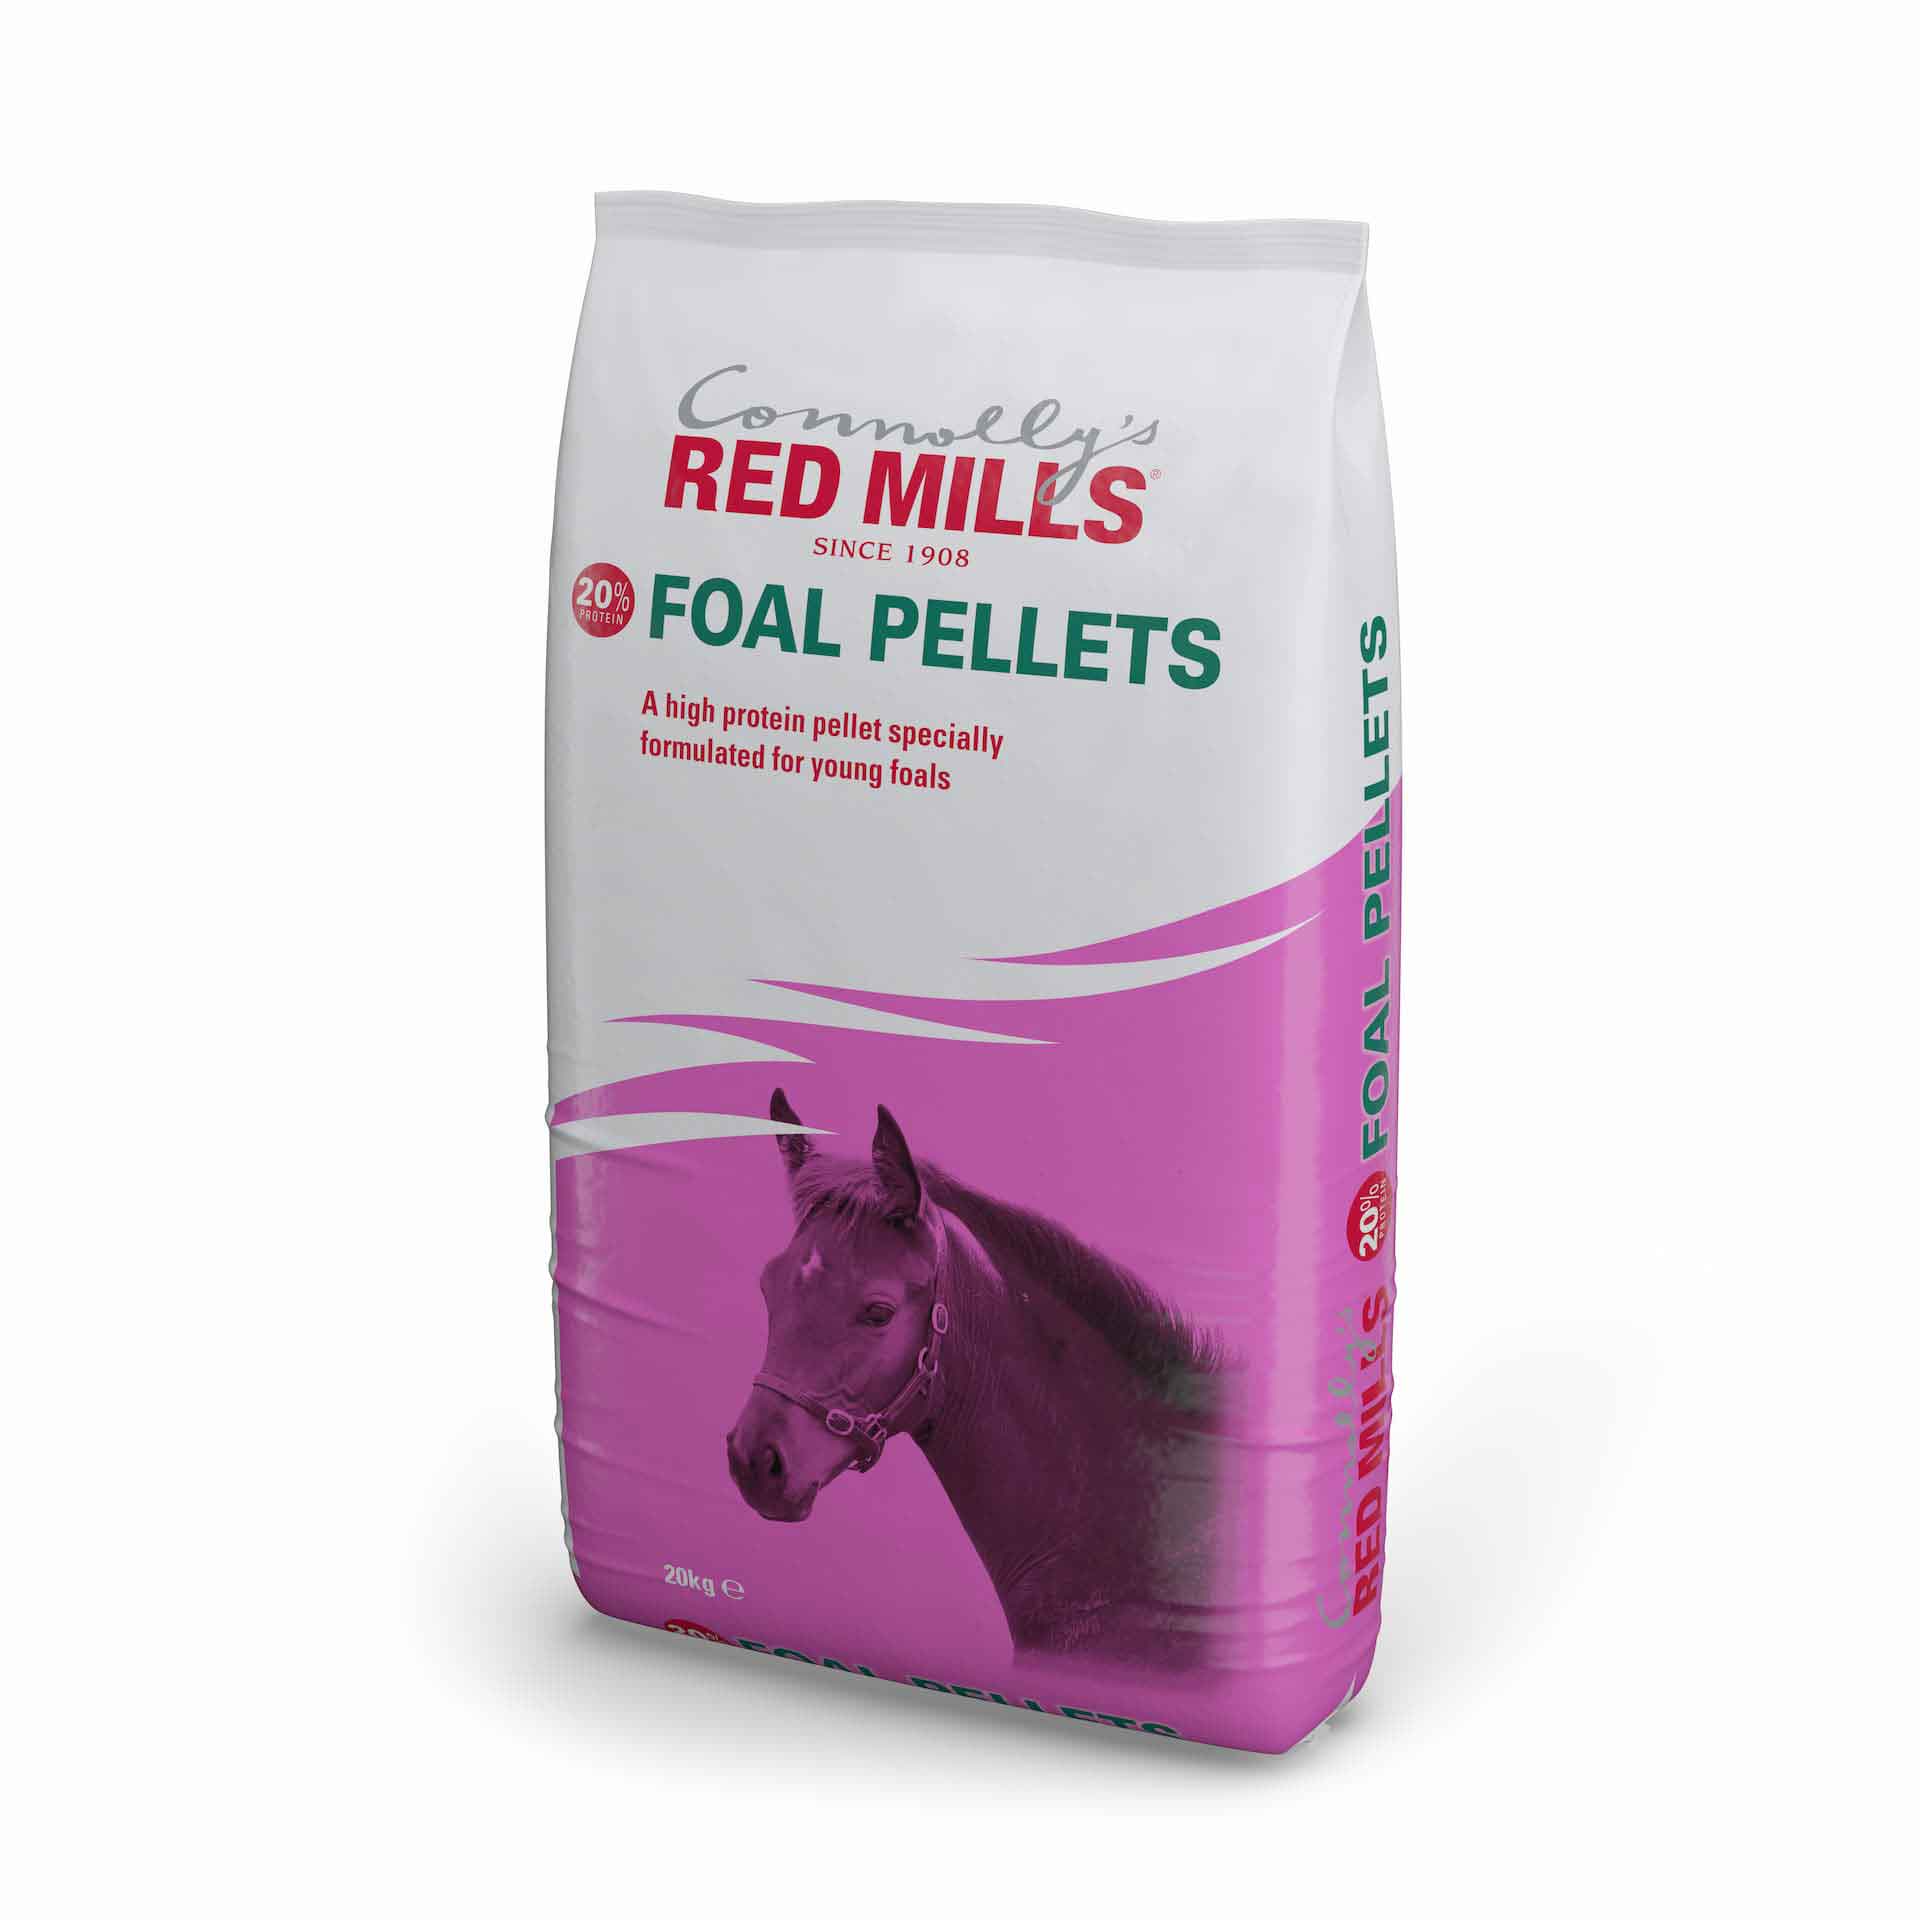 Foal Pellets